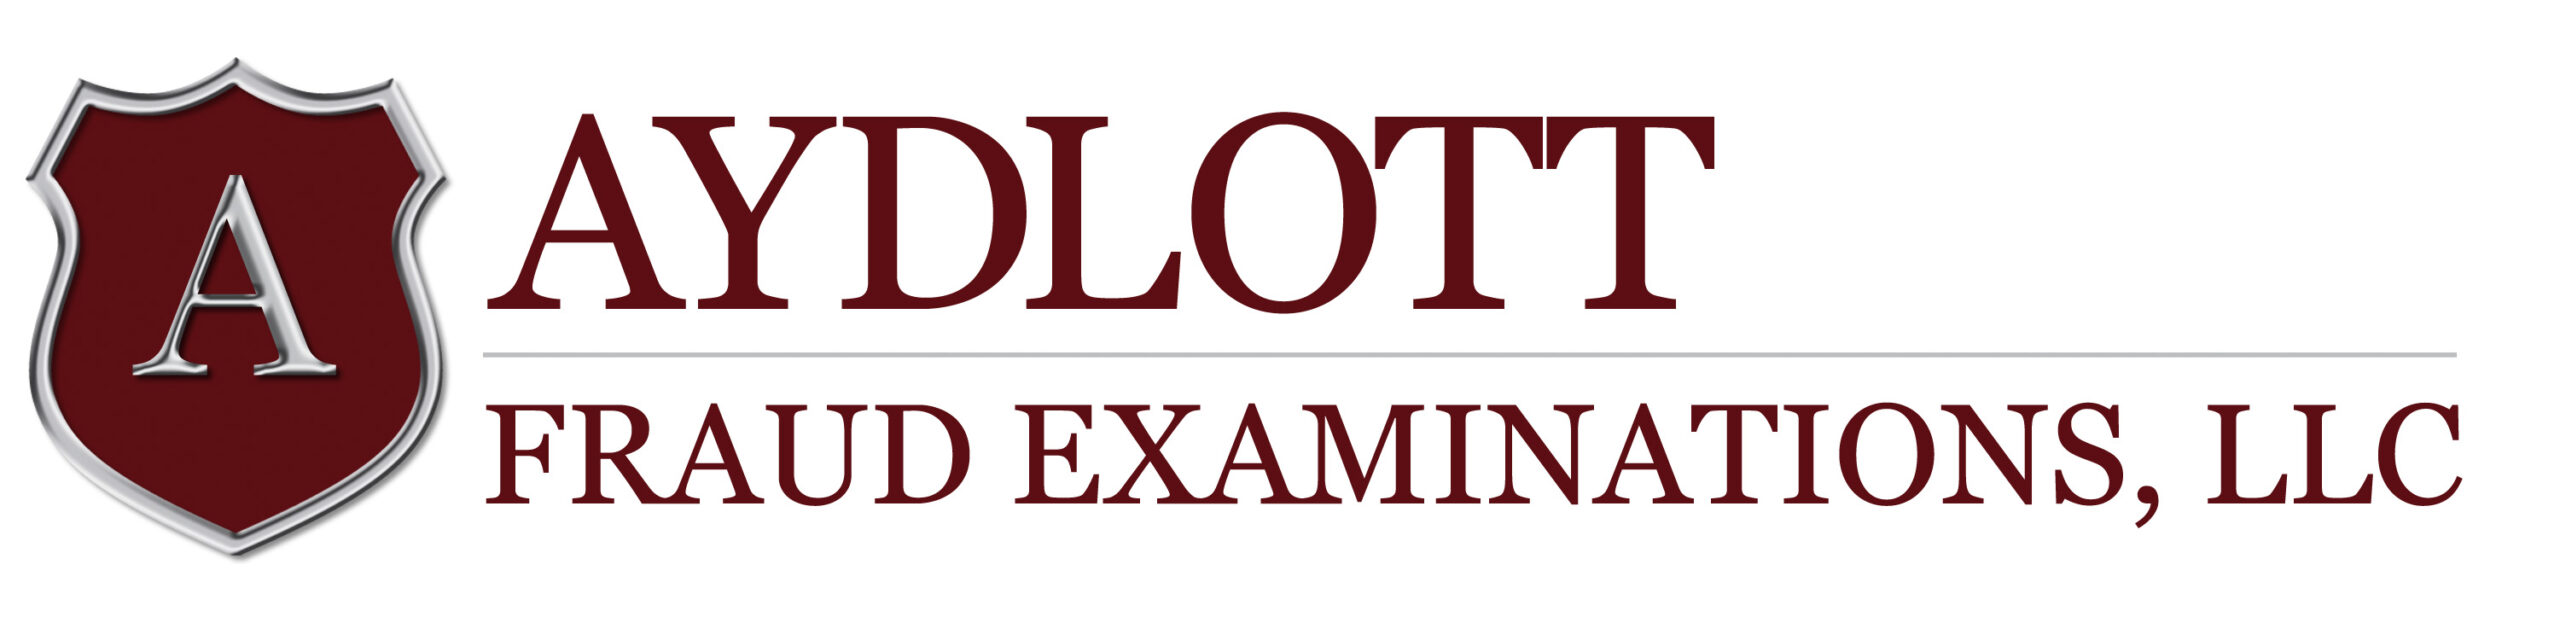 Aydlott Fraud Examinations, LLC